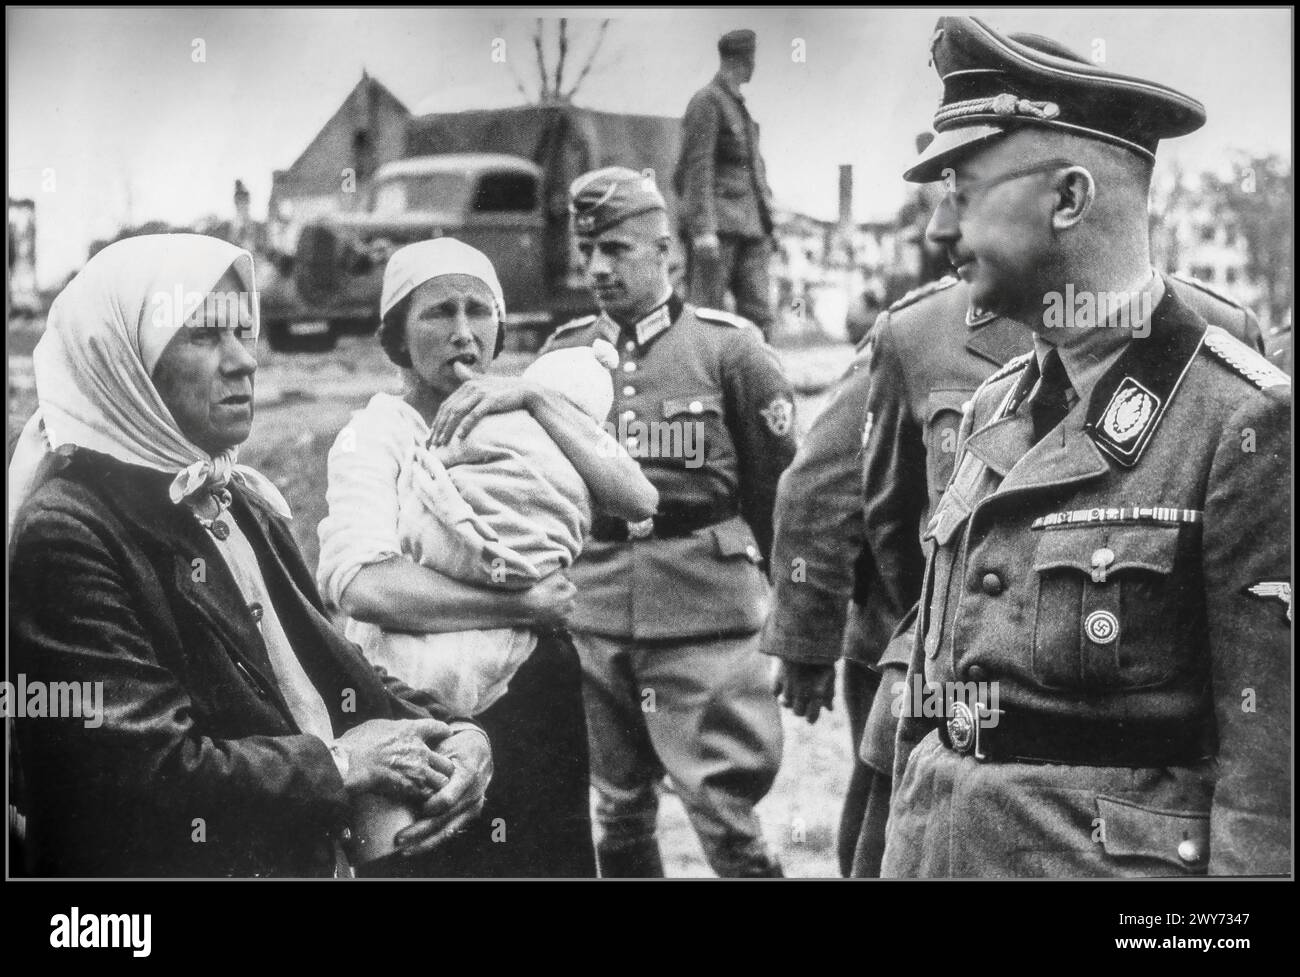 Seconda guerra mondiale Reichsführer, Heinrich Himmler parla con i contadini durante un tour di ispezione in Bielorussia. 1941 lo stato nazista-tedesco descrisse la guerra contro l'Unione Sovietica come una guerra razziale tra gli ariani tedeschi e gli slavi subumani ed ebrei. Fin dall'inizio la guerra contro l'Unione Sovietica includeva il trattamento brutale dei prigionieri di guerra sovietici da parte dei tedeschi, in violazione di ogni standard di guerra, e l'uccisione di prigionieri di guerra su vasta scala. Più di due milioni di persone sono state uccise in Bielorussia durante i tre anni di occupazione nazista, Foto Stock